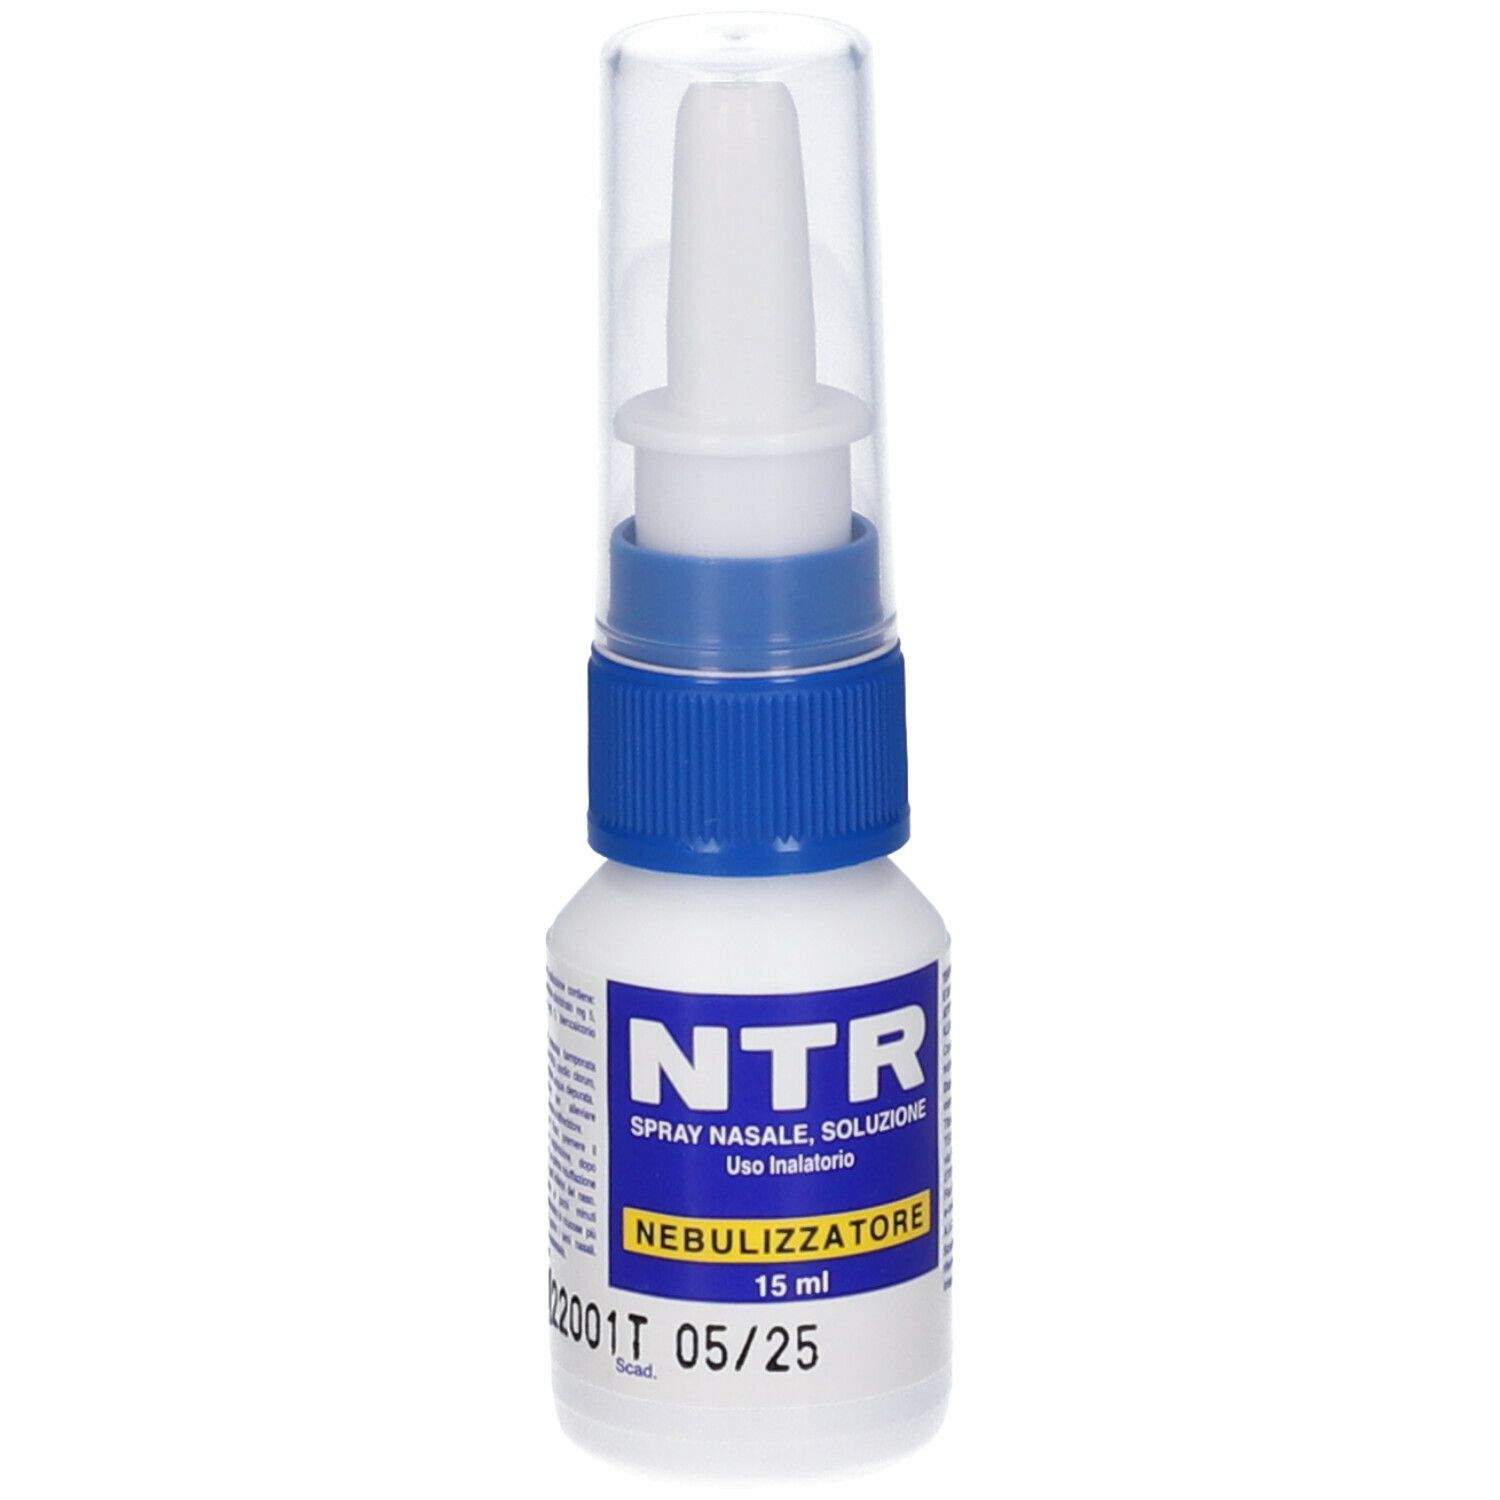 NTR Spray Nasale